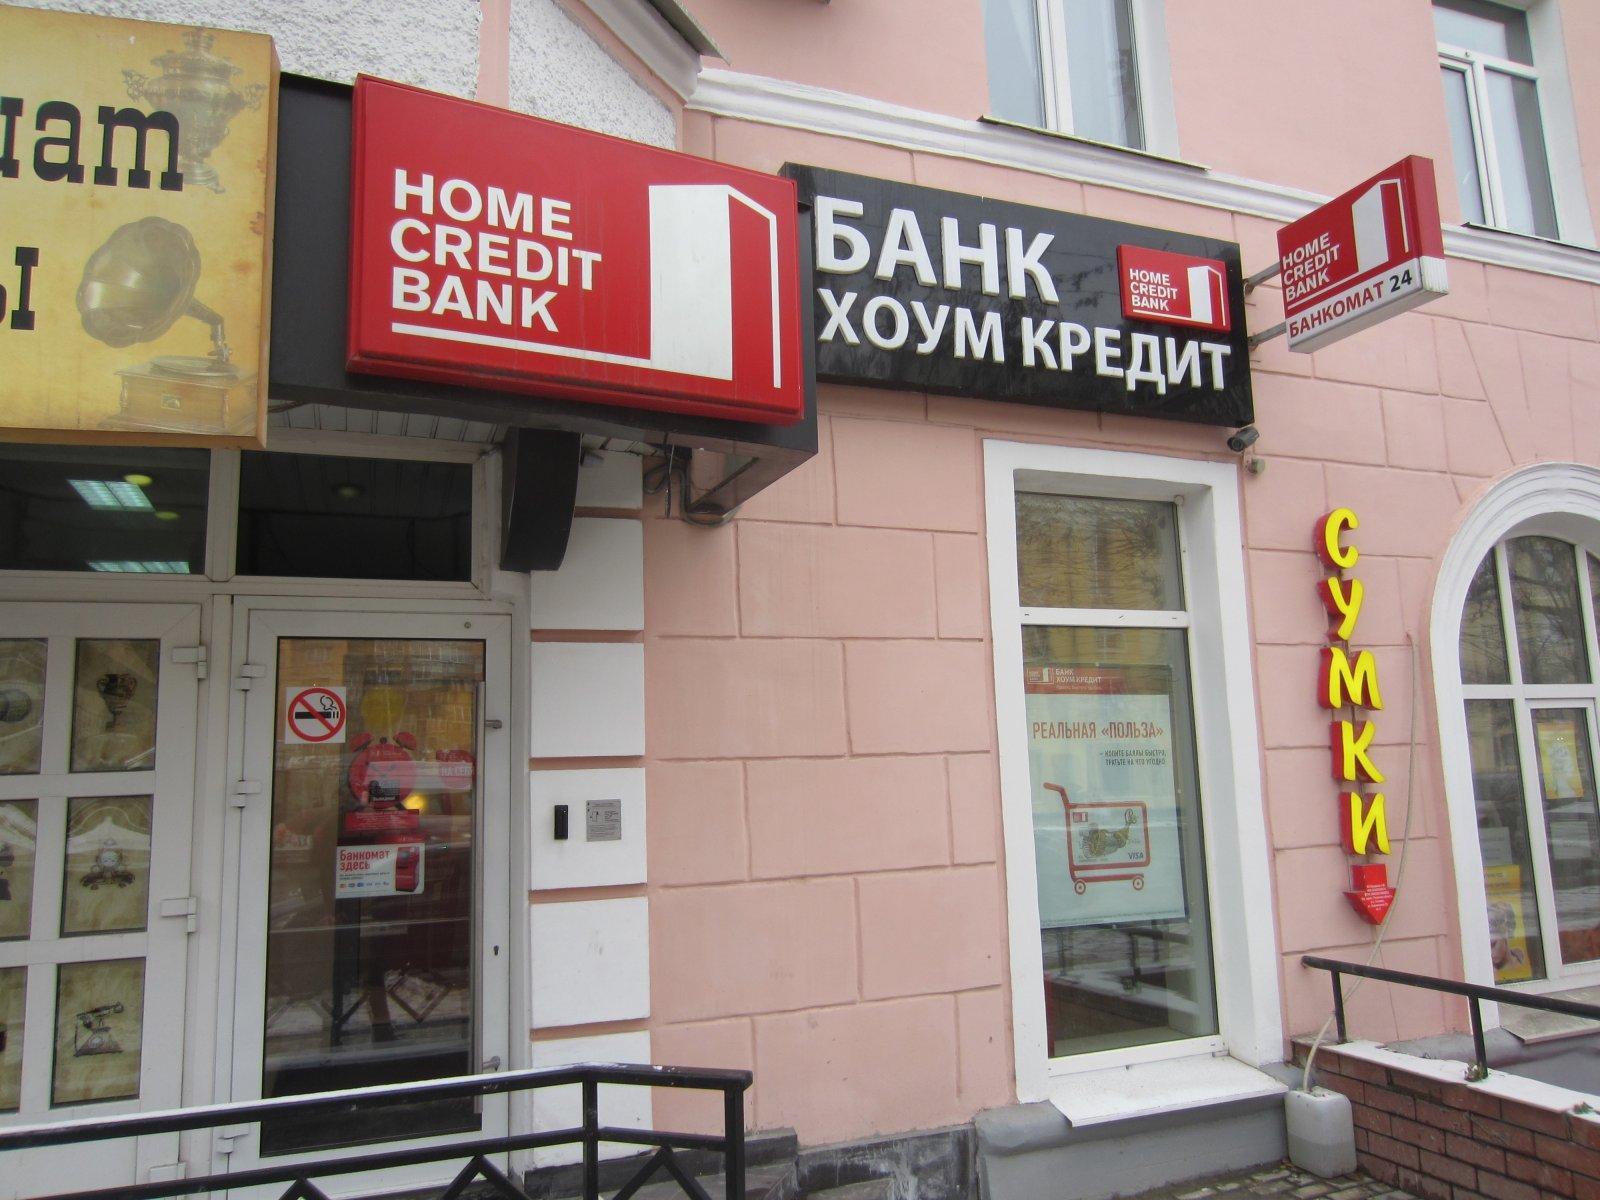 Хоум банк название. Хоум кредит банк. Хоум кредит банк адреса. Где находится хоум кредит. Хоум кредит банк Барнаул.